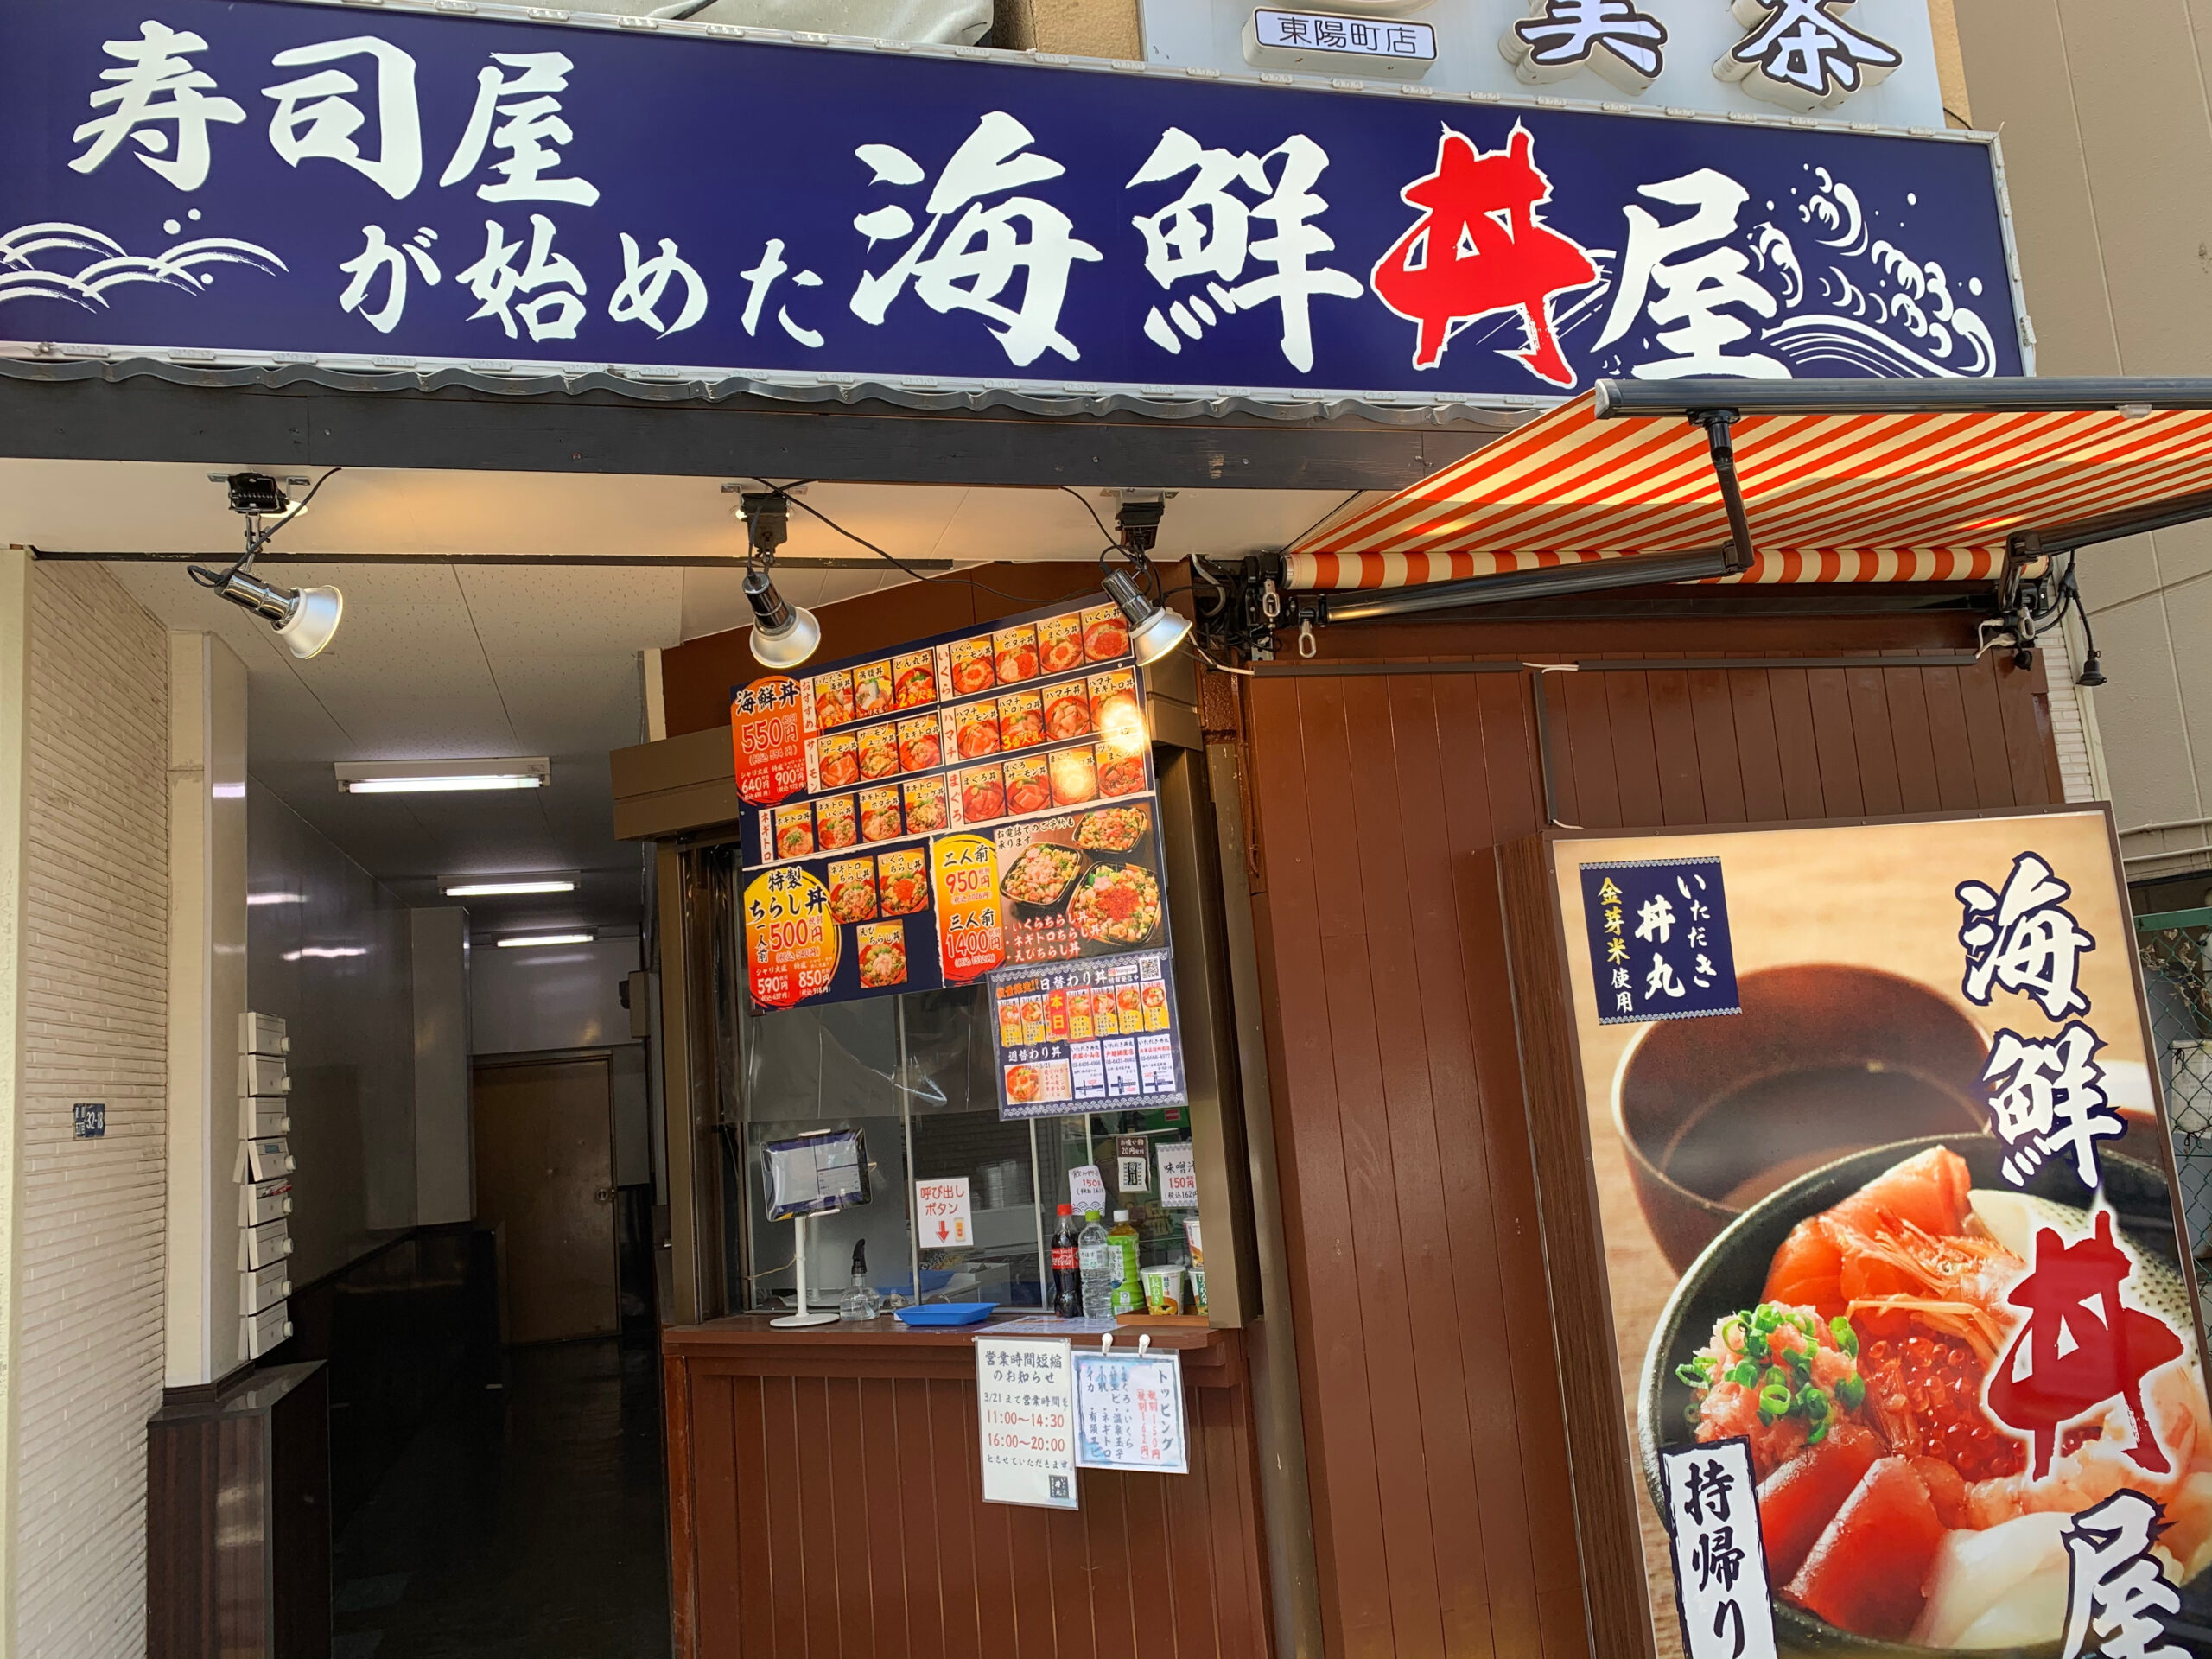 【江東区東陽町の海鮮丼テイクアウト店】「寿司屋が始めた海鮮丼屋いただき丼丸」で海鮮丼を頂きました